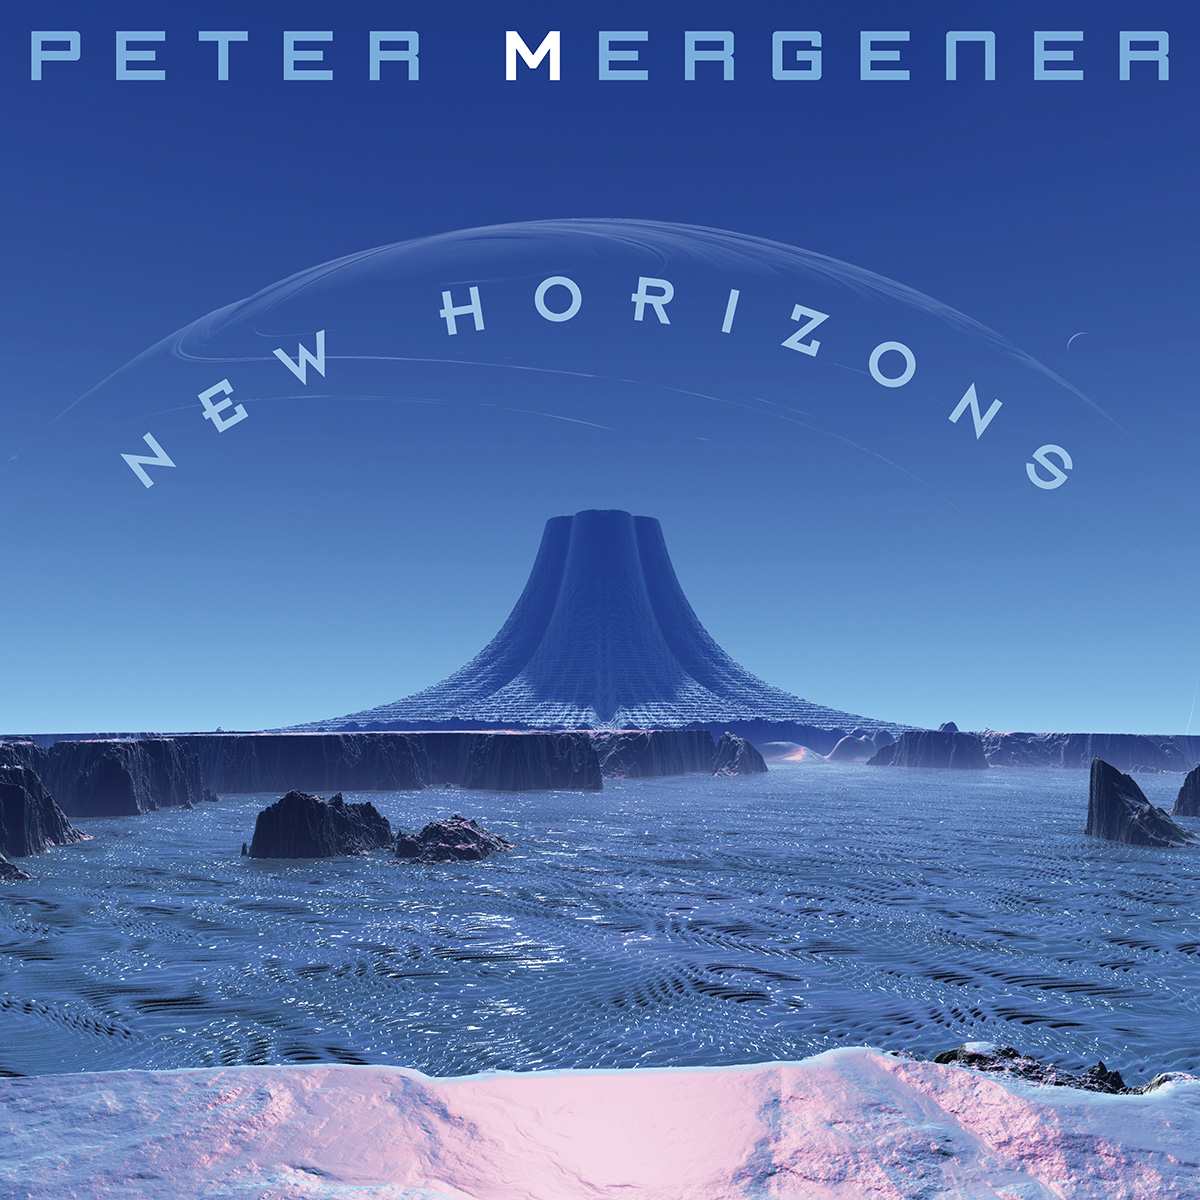 Peter Mergener - Interview on Rockradio